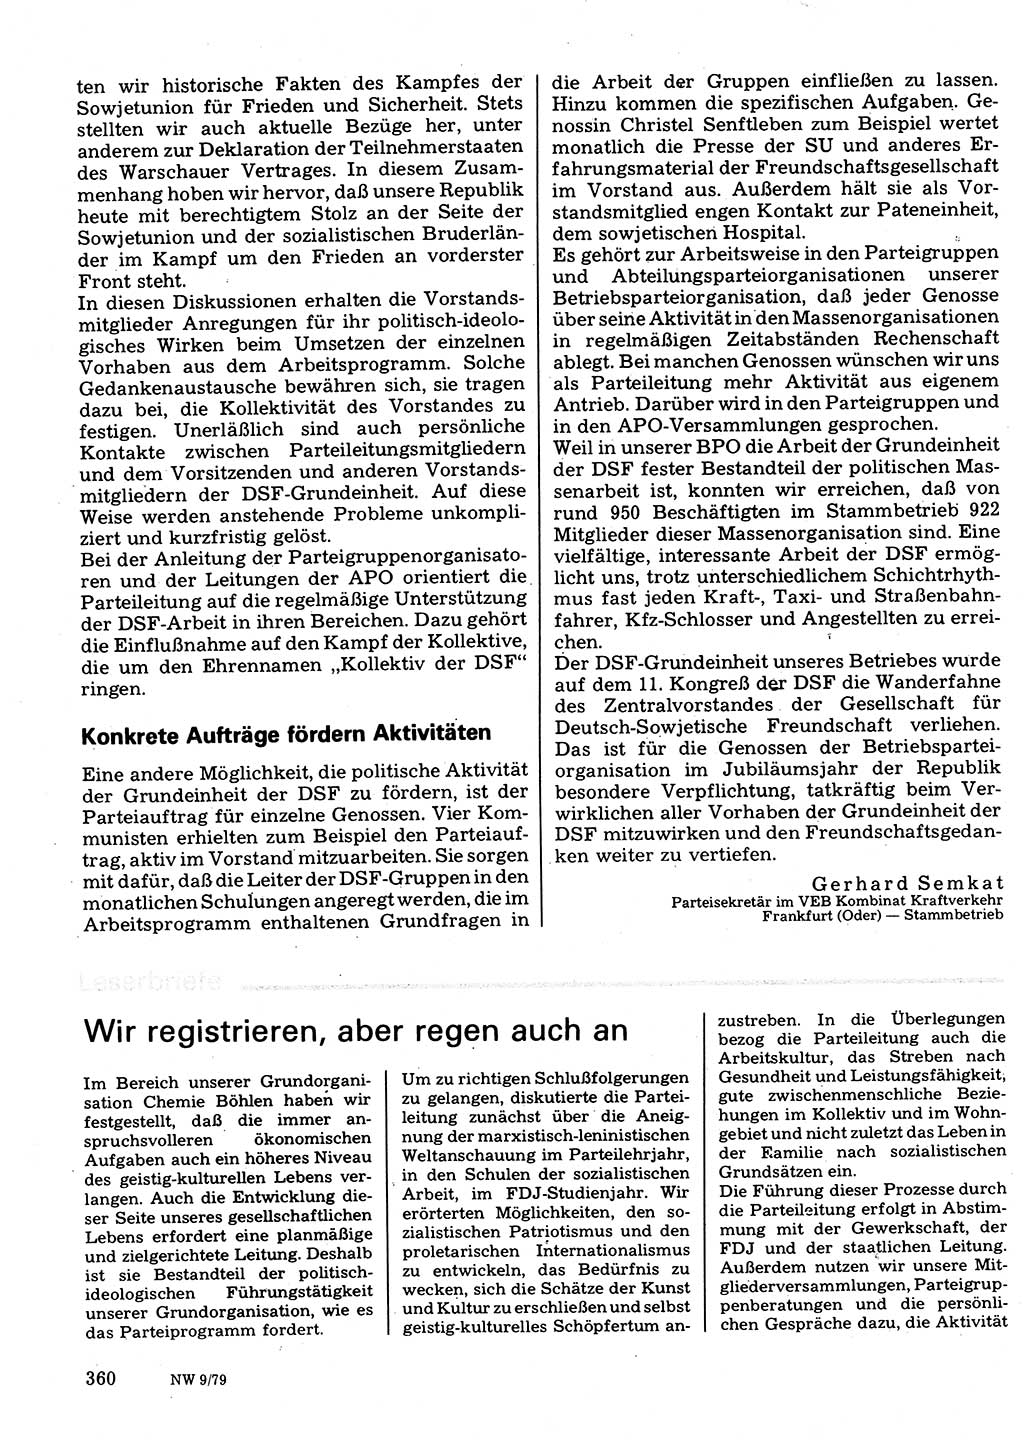 Neuer Weg (NW), Organ des Zentralkomitees (ZK) der SED (Sozialistische Einheitspartei Deutschlands) für Fragen des Parteilebens, 34. Jahrgang [Deutsche Demokratische Republik (DDR)] 1979, Seite 360 (NW ZK SED DDR 1979, S. 360)